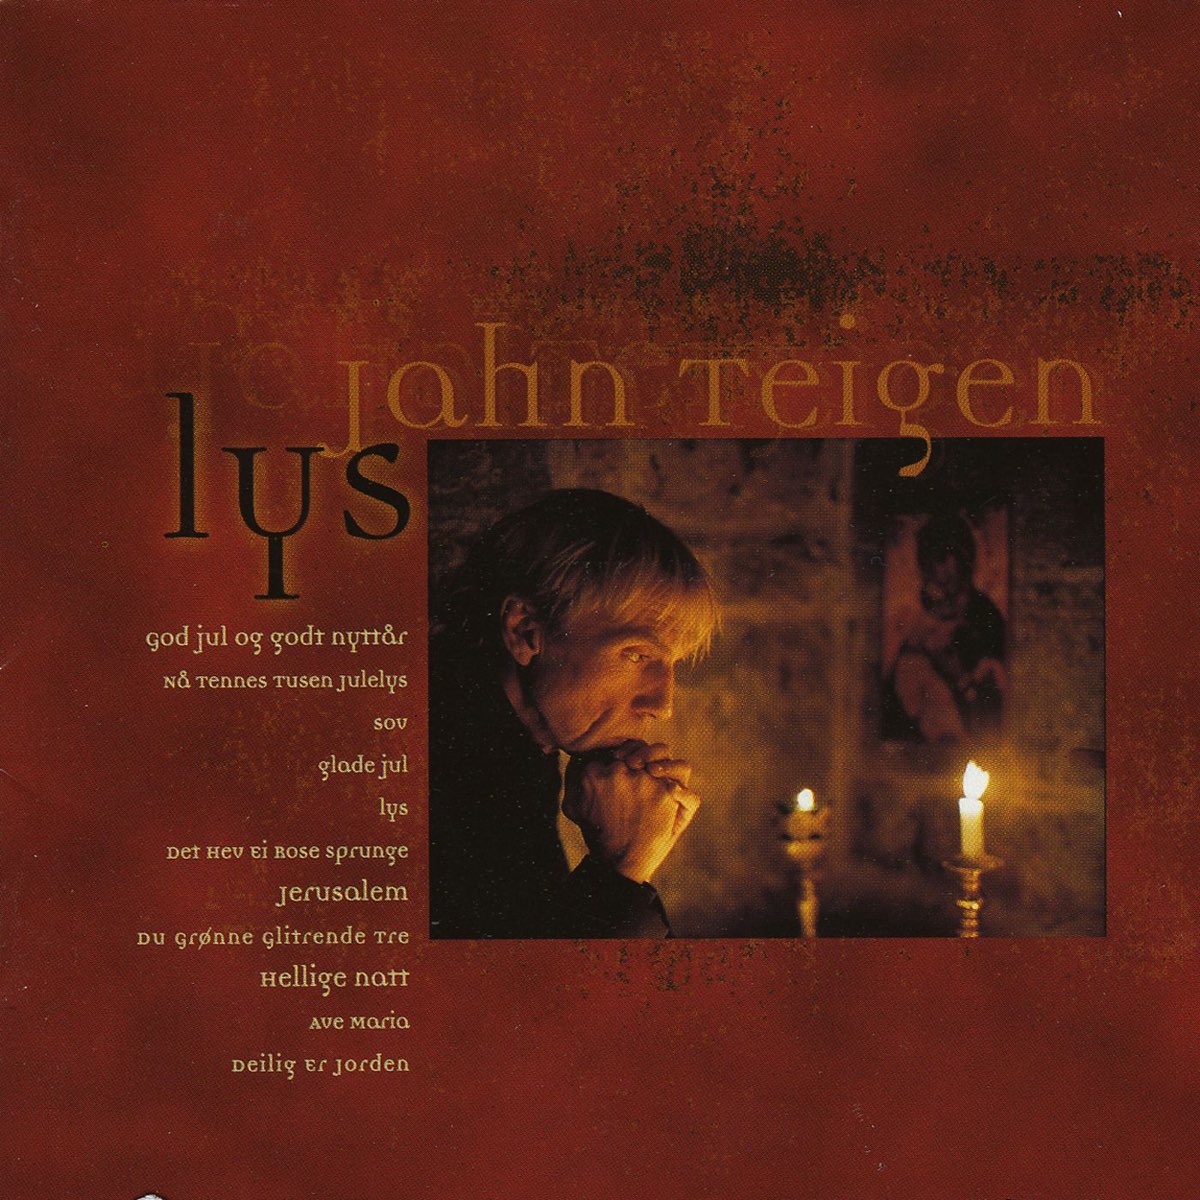 Lys by Jahn Teigen on Apple Music